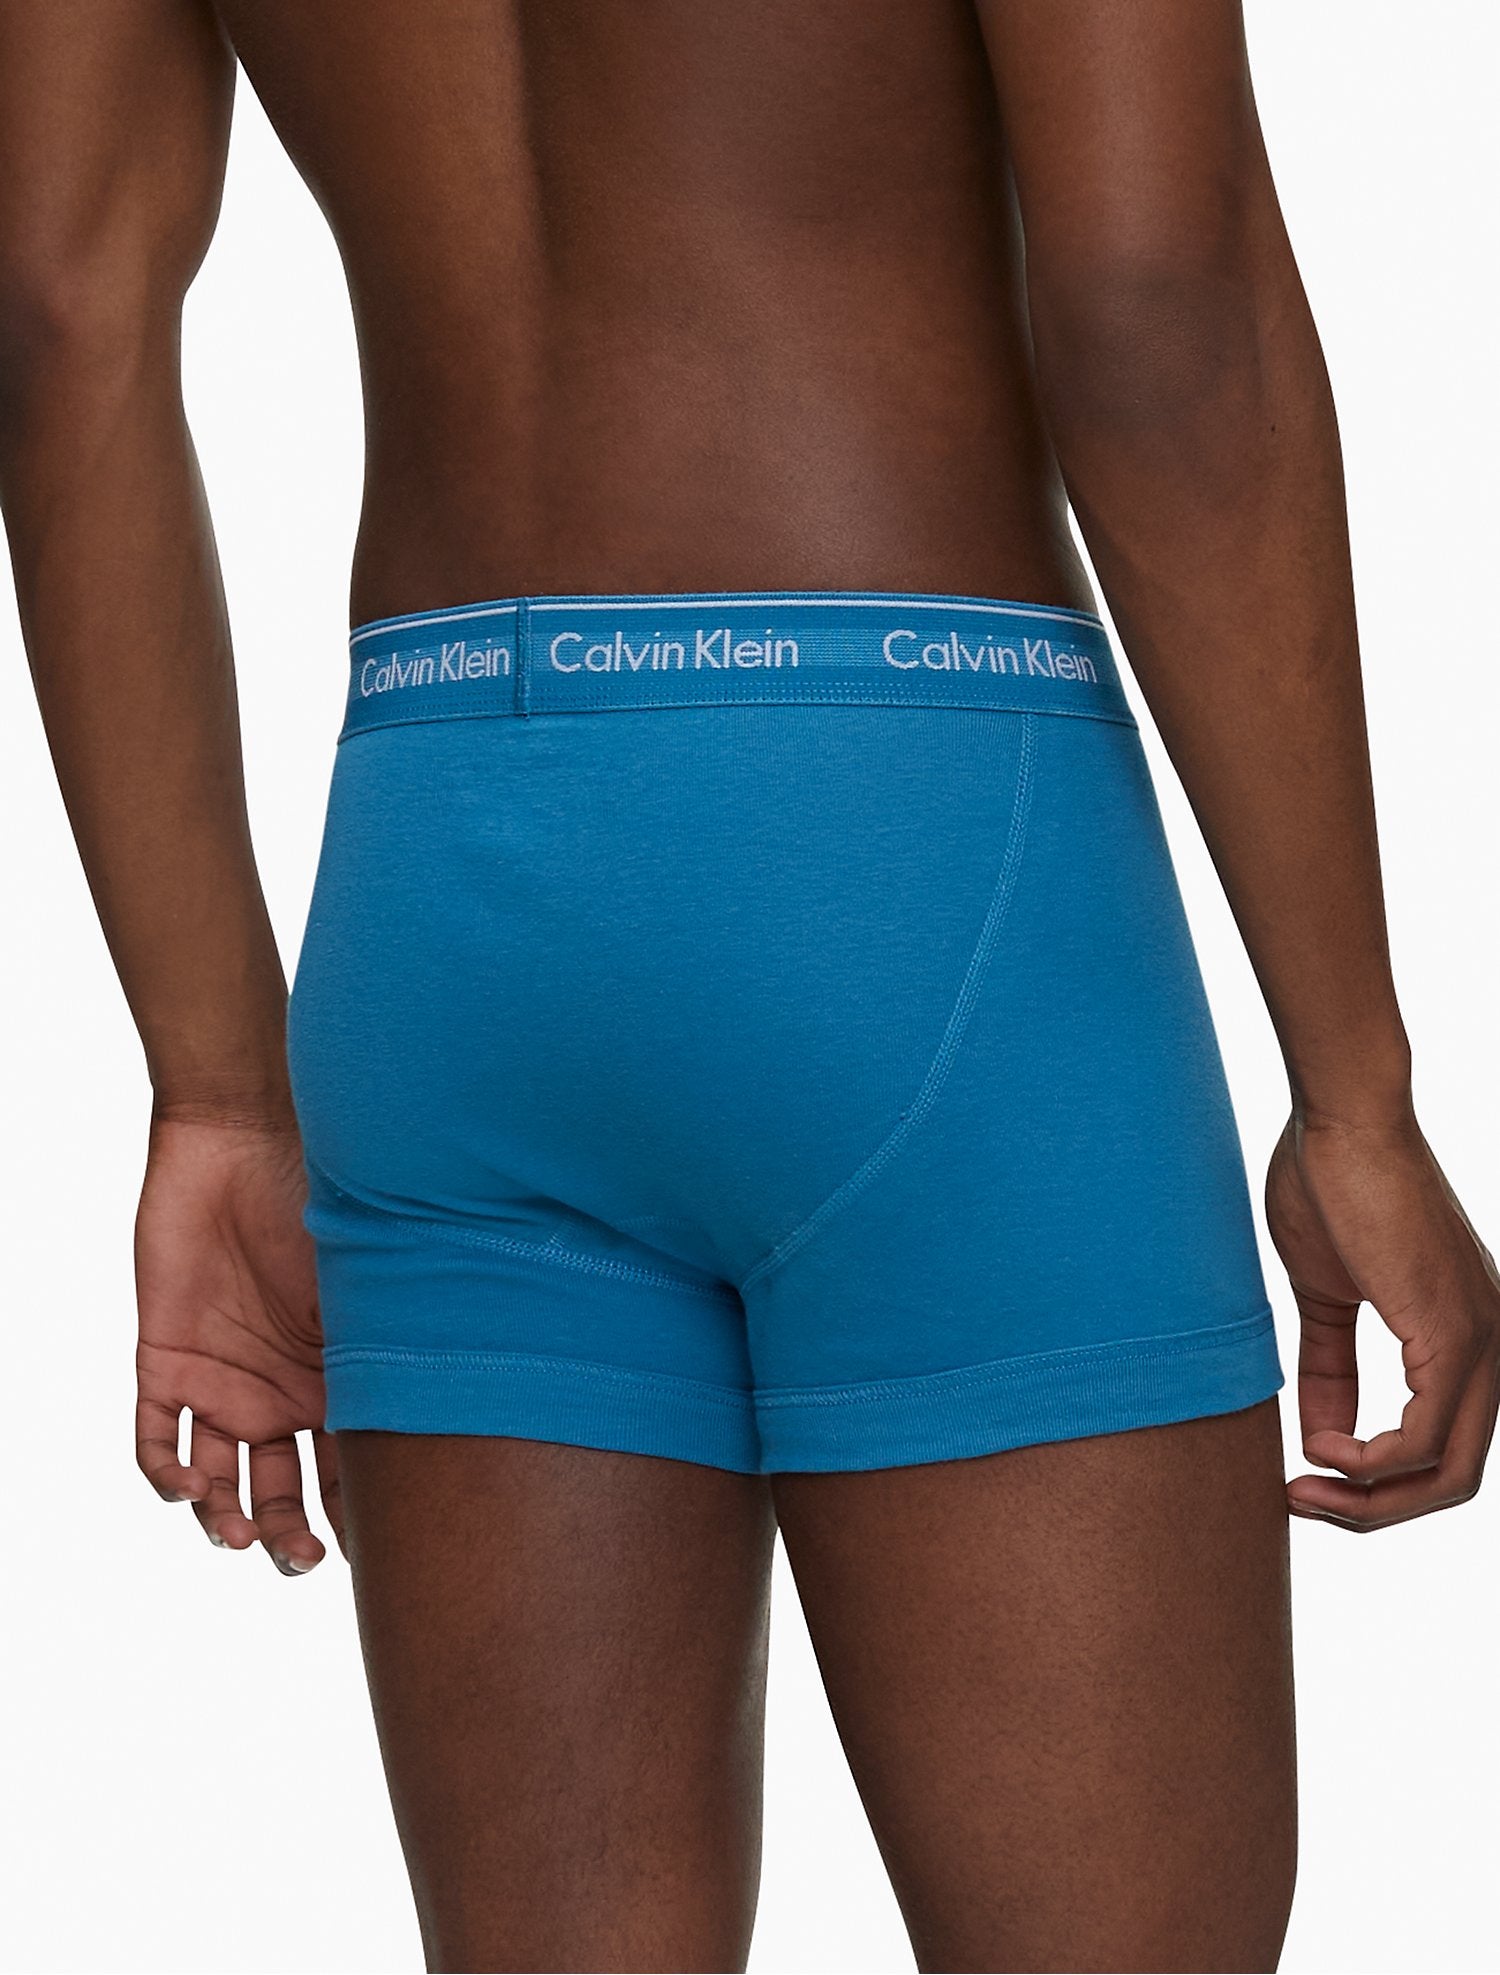 Calvin Klein Cotton Classic Fit 3-Pack Trunk - Men